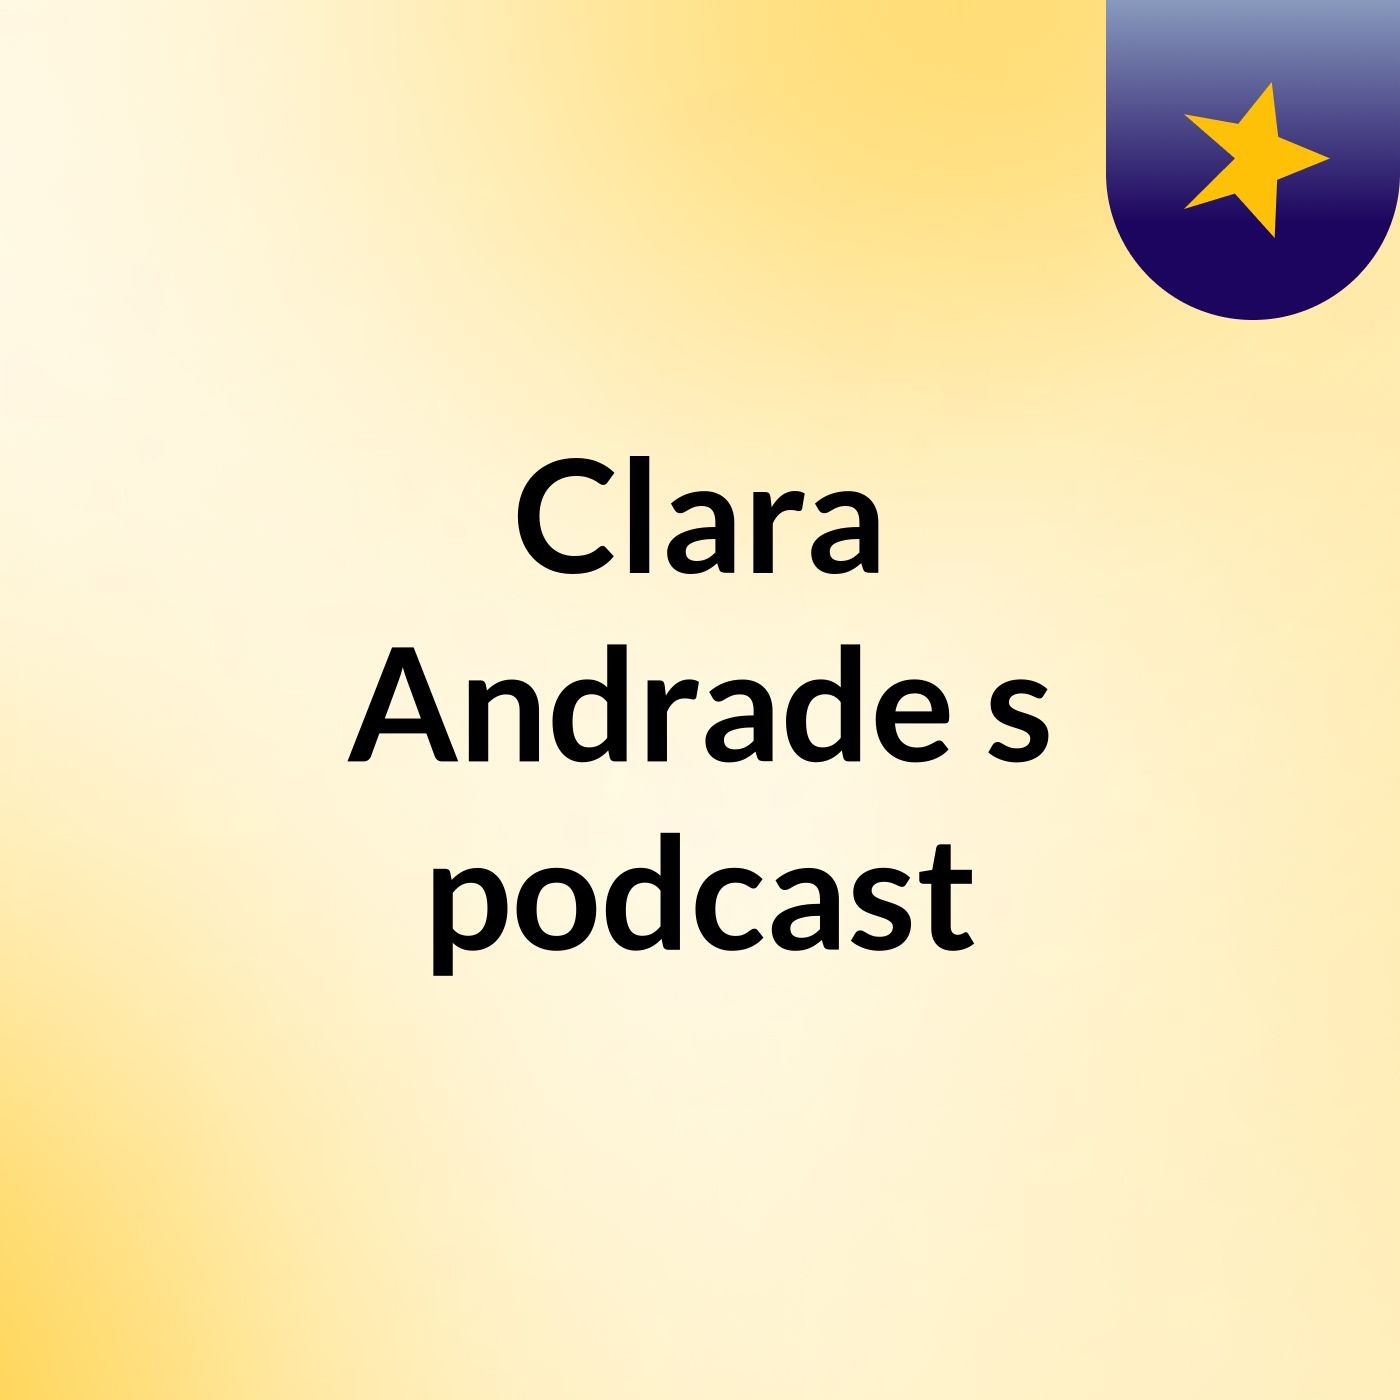 Clara Andrade's podcast